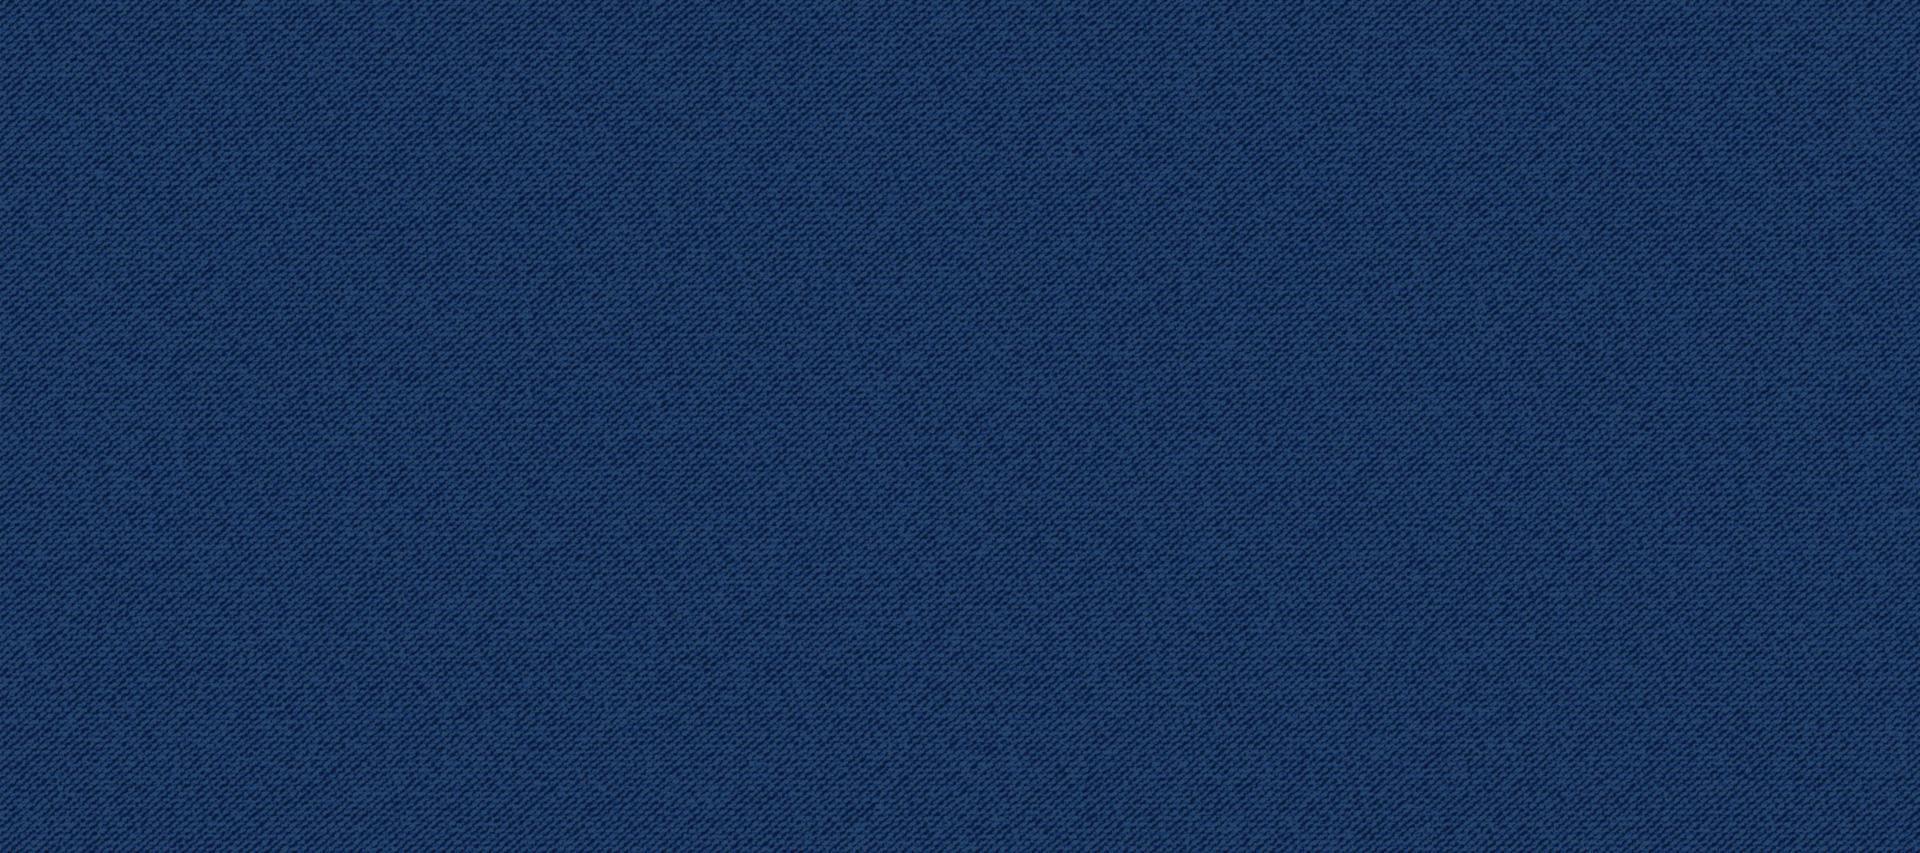 texture denim jeans classique bleu. texture de jeans foncés. illustration vectorielle réaliste vecteur